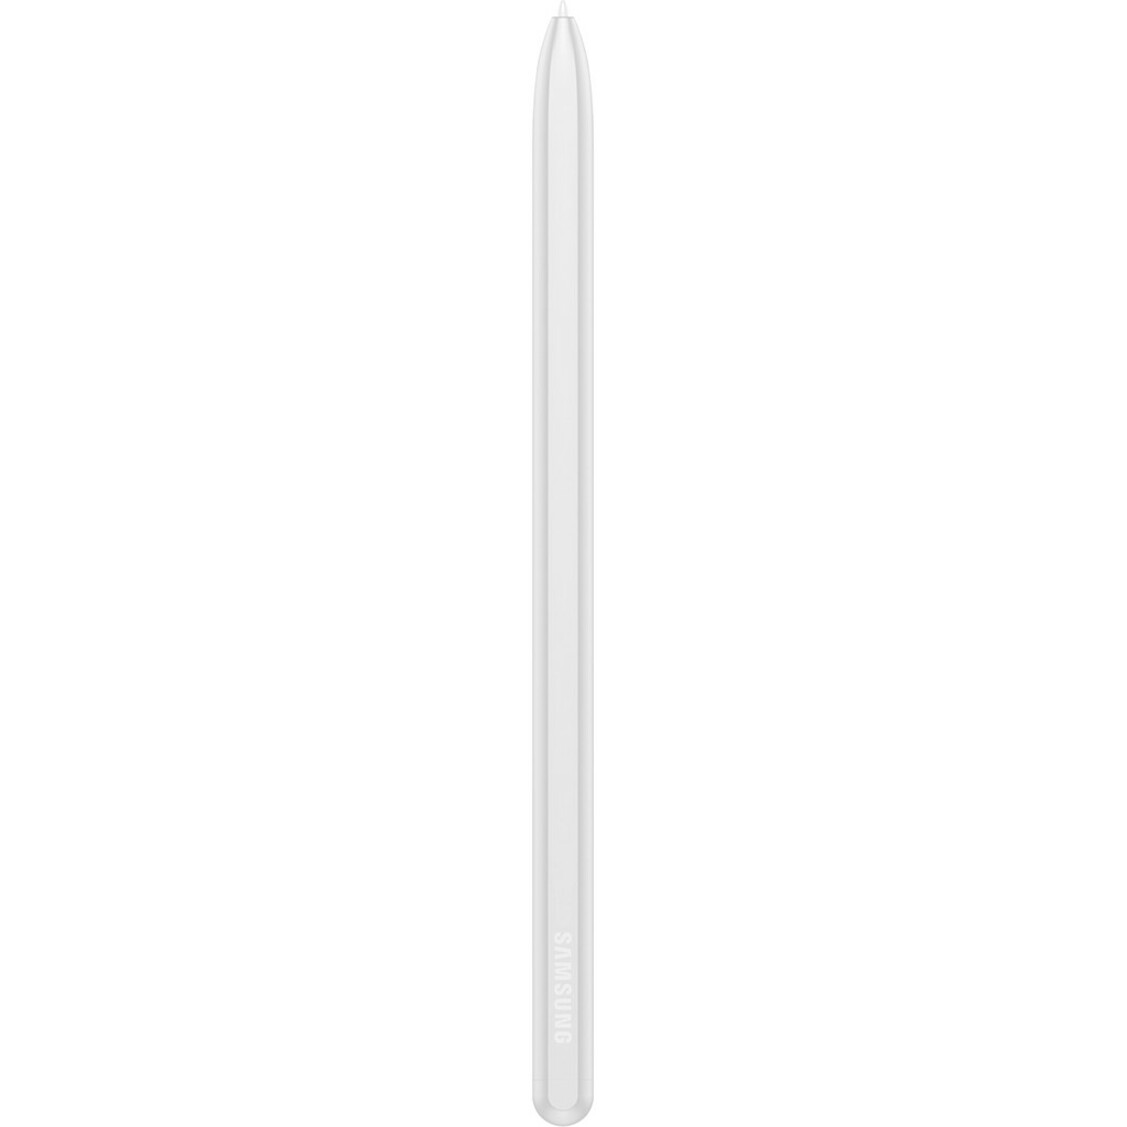 Samsung EJ-PT730BSEGUJ Galaxy Tab S7 FE S Pen, Mystic Silver - Stylus for Galaxy Tab S7 FE Tablet